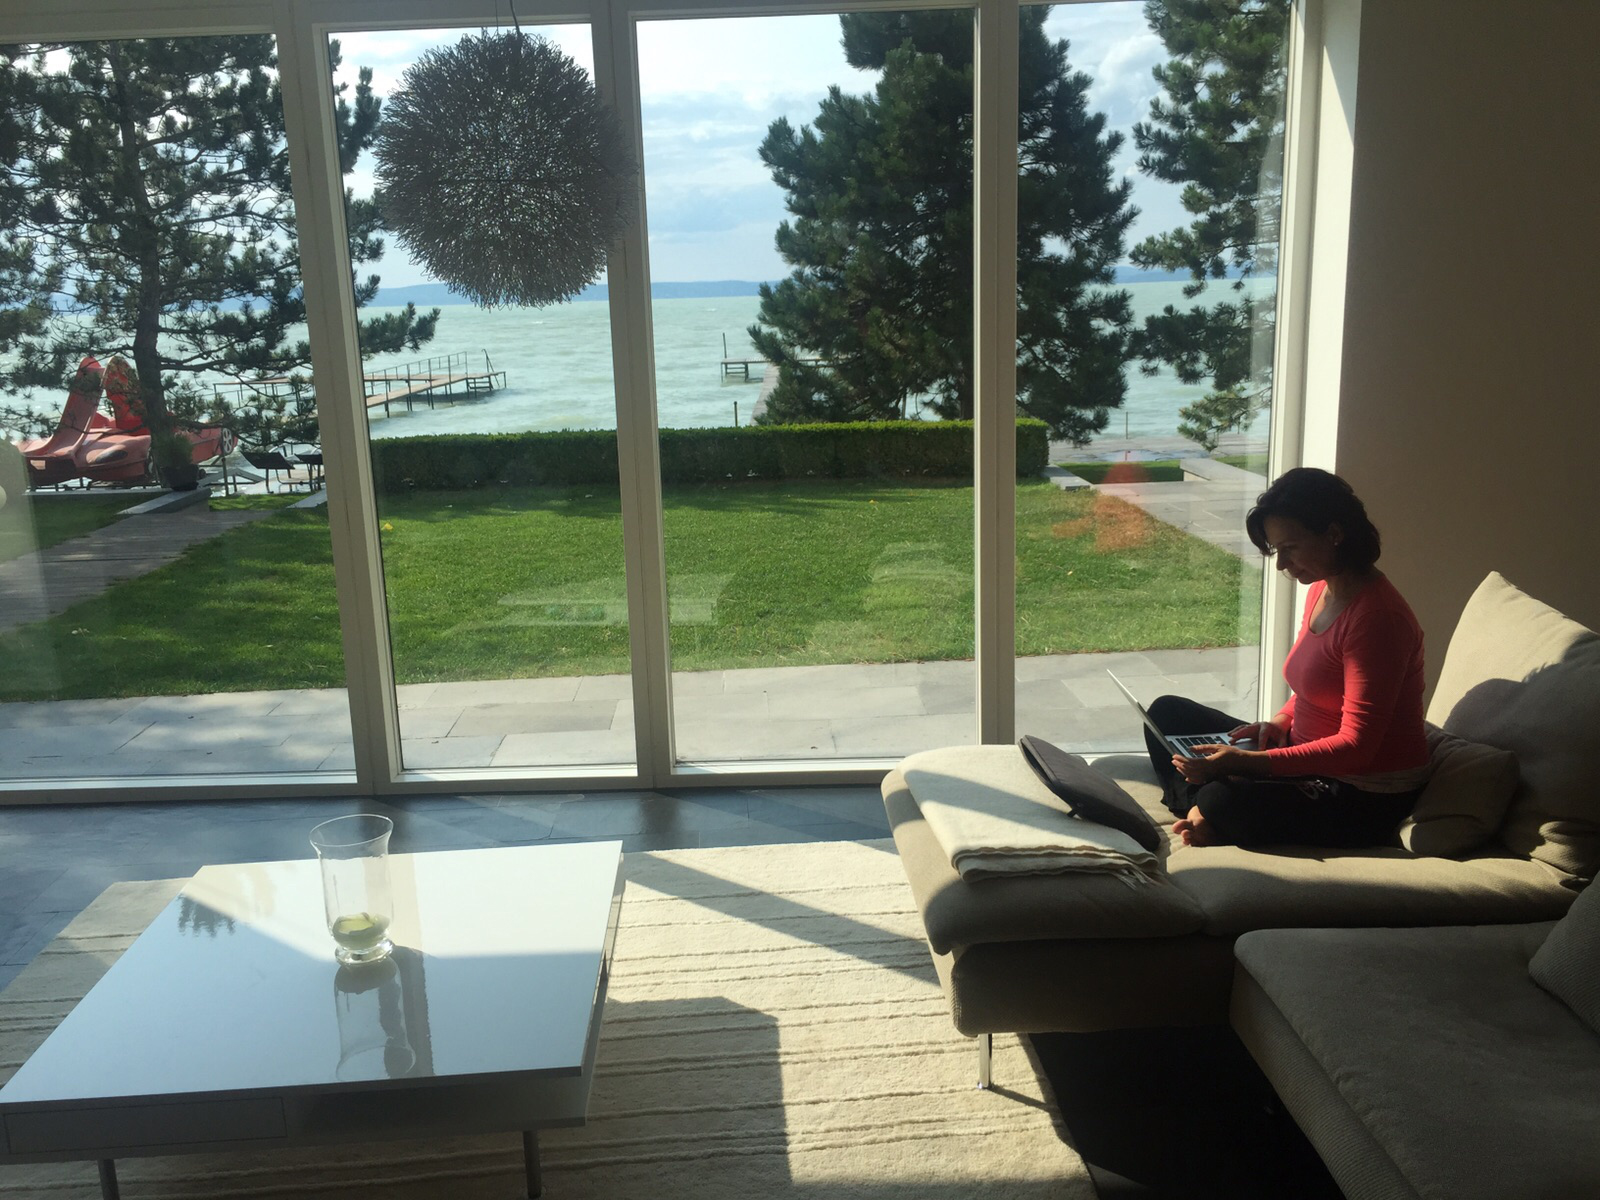 Szép, tágas, világos környezetben ülök egy laptop mellett, tóparton